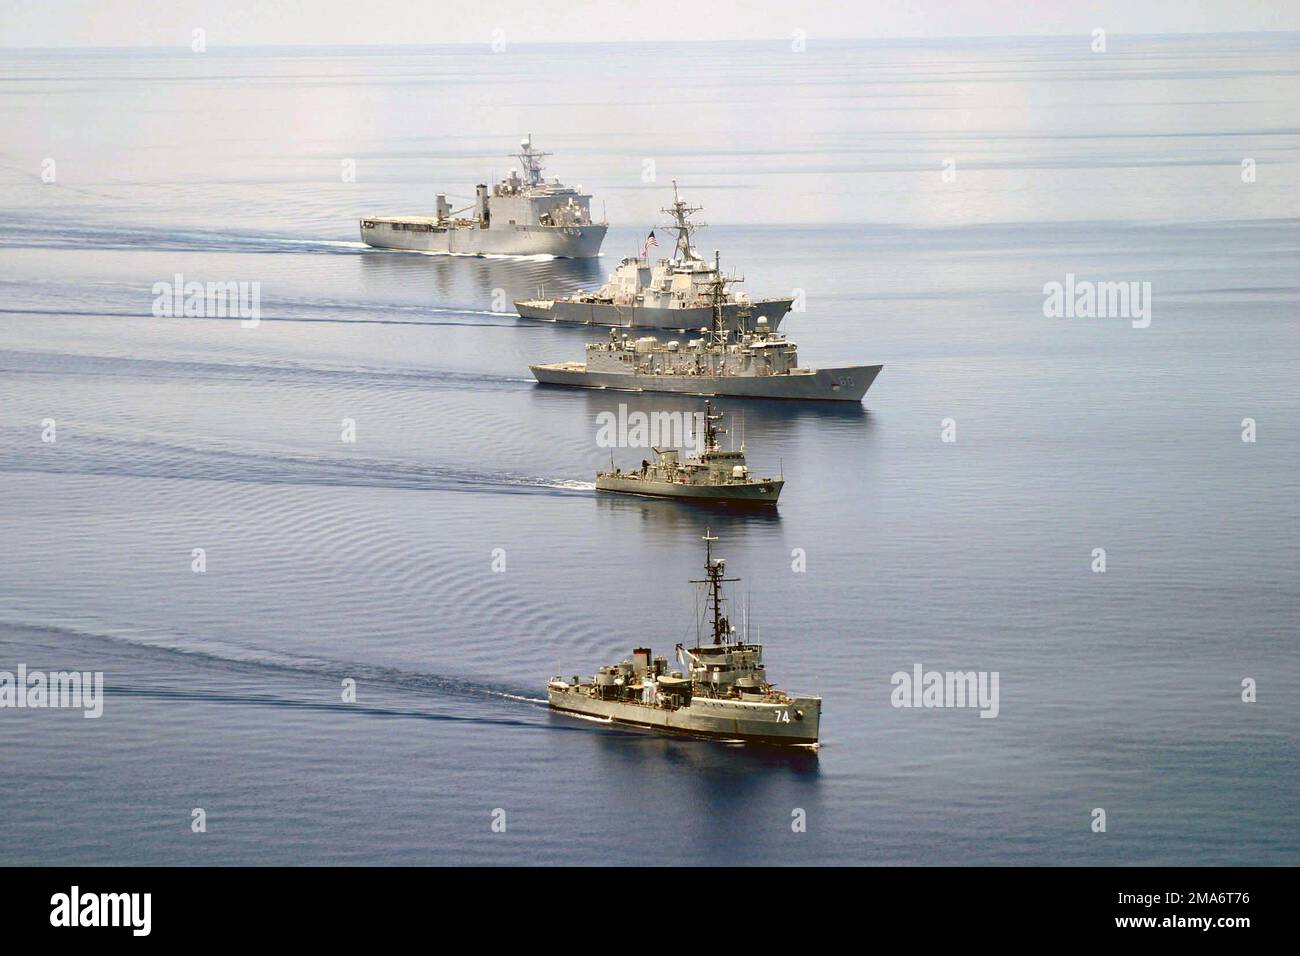 050822-N-6264C-145. [Complete] Scene Caption: Eine gemeinsame Task Group der US Navy (USN) und der philippinischen Navy, die während der auf See stattfindenden Phase der ÜBUNGSKOOPERATION ÜBER BORD DER Philippinen (CARAT) IN BETRIEB ist. Abbildung von oben nach unten: US Navy (USN) Dock Landing Ship Harpers Ferry (LSD 49); USN Arleigh Burke Class Guided Missile Destroyer USS Paul Hamilton (DDG 60); USN Oliver Hazard Perry Class Frigate USS RODNEY M. DAVIS (FFG 60); Philippine Navy Jacinto (Peacock) Class BRP (Barko Republika Pilipinas) EMILIO JACINTO (PS 35); Corvette Auk Class BRP RIZAL (PS 74). KARAT ist ein jährlicher ser Stockfoto